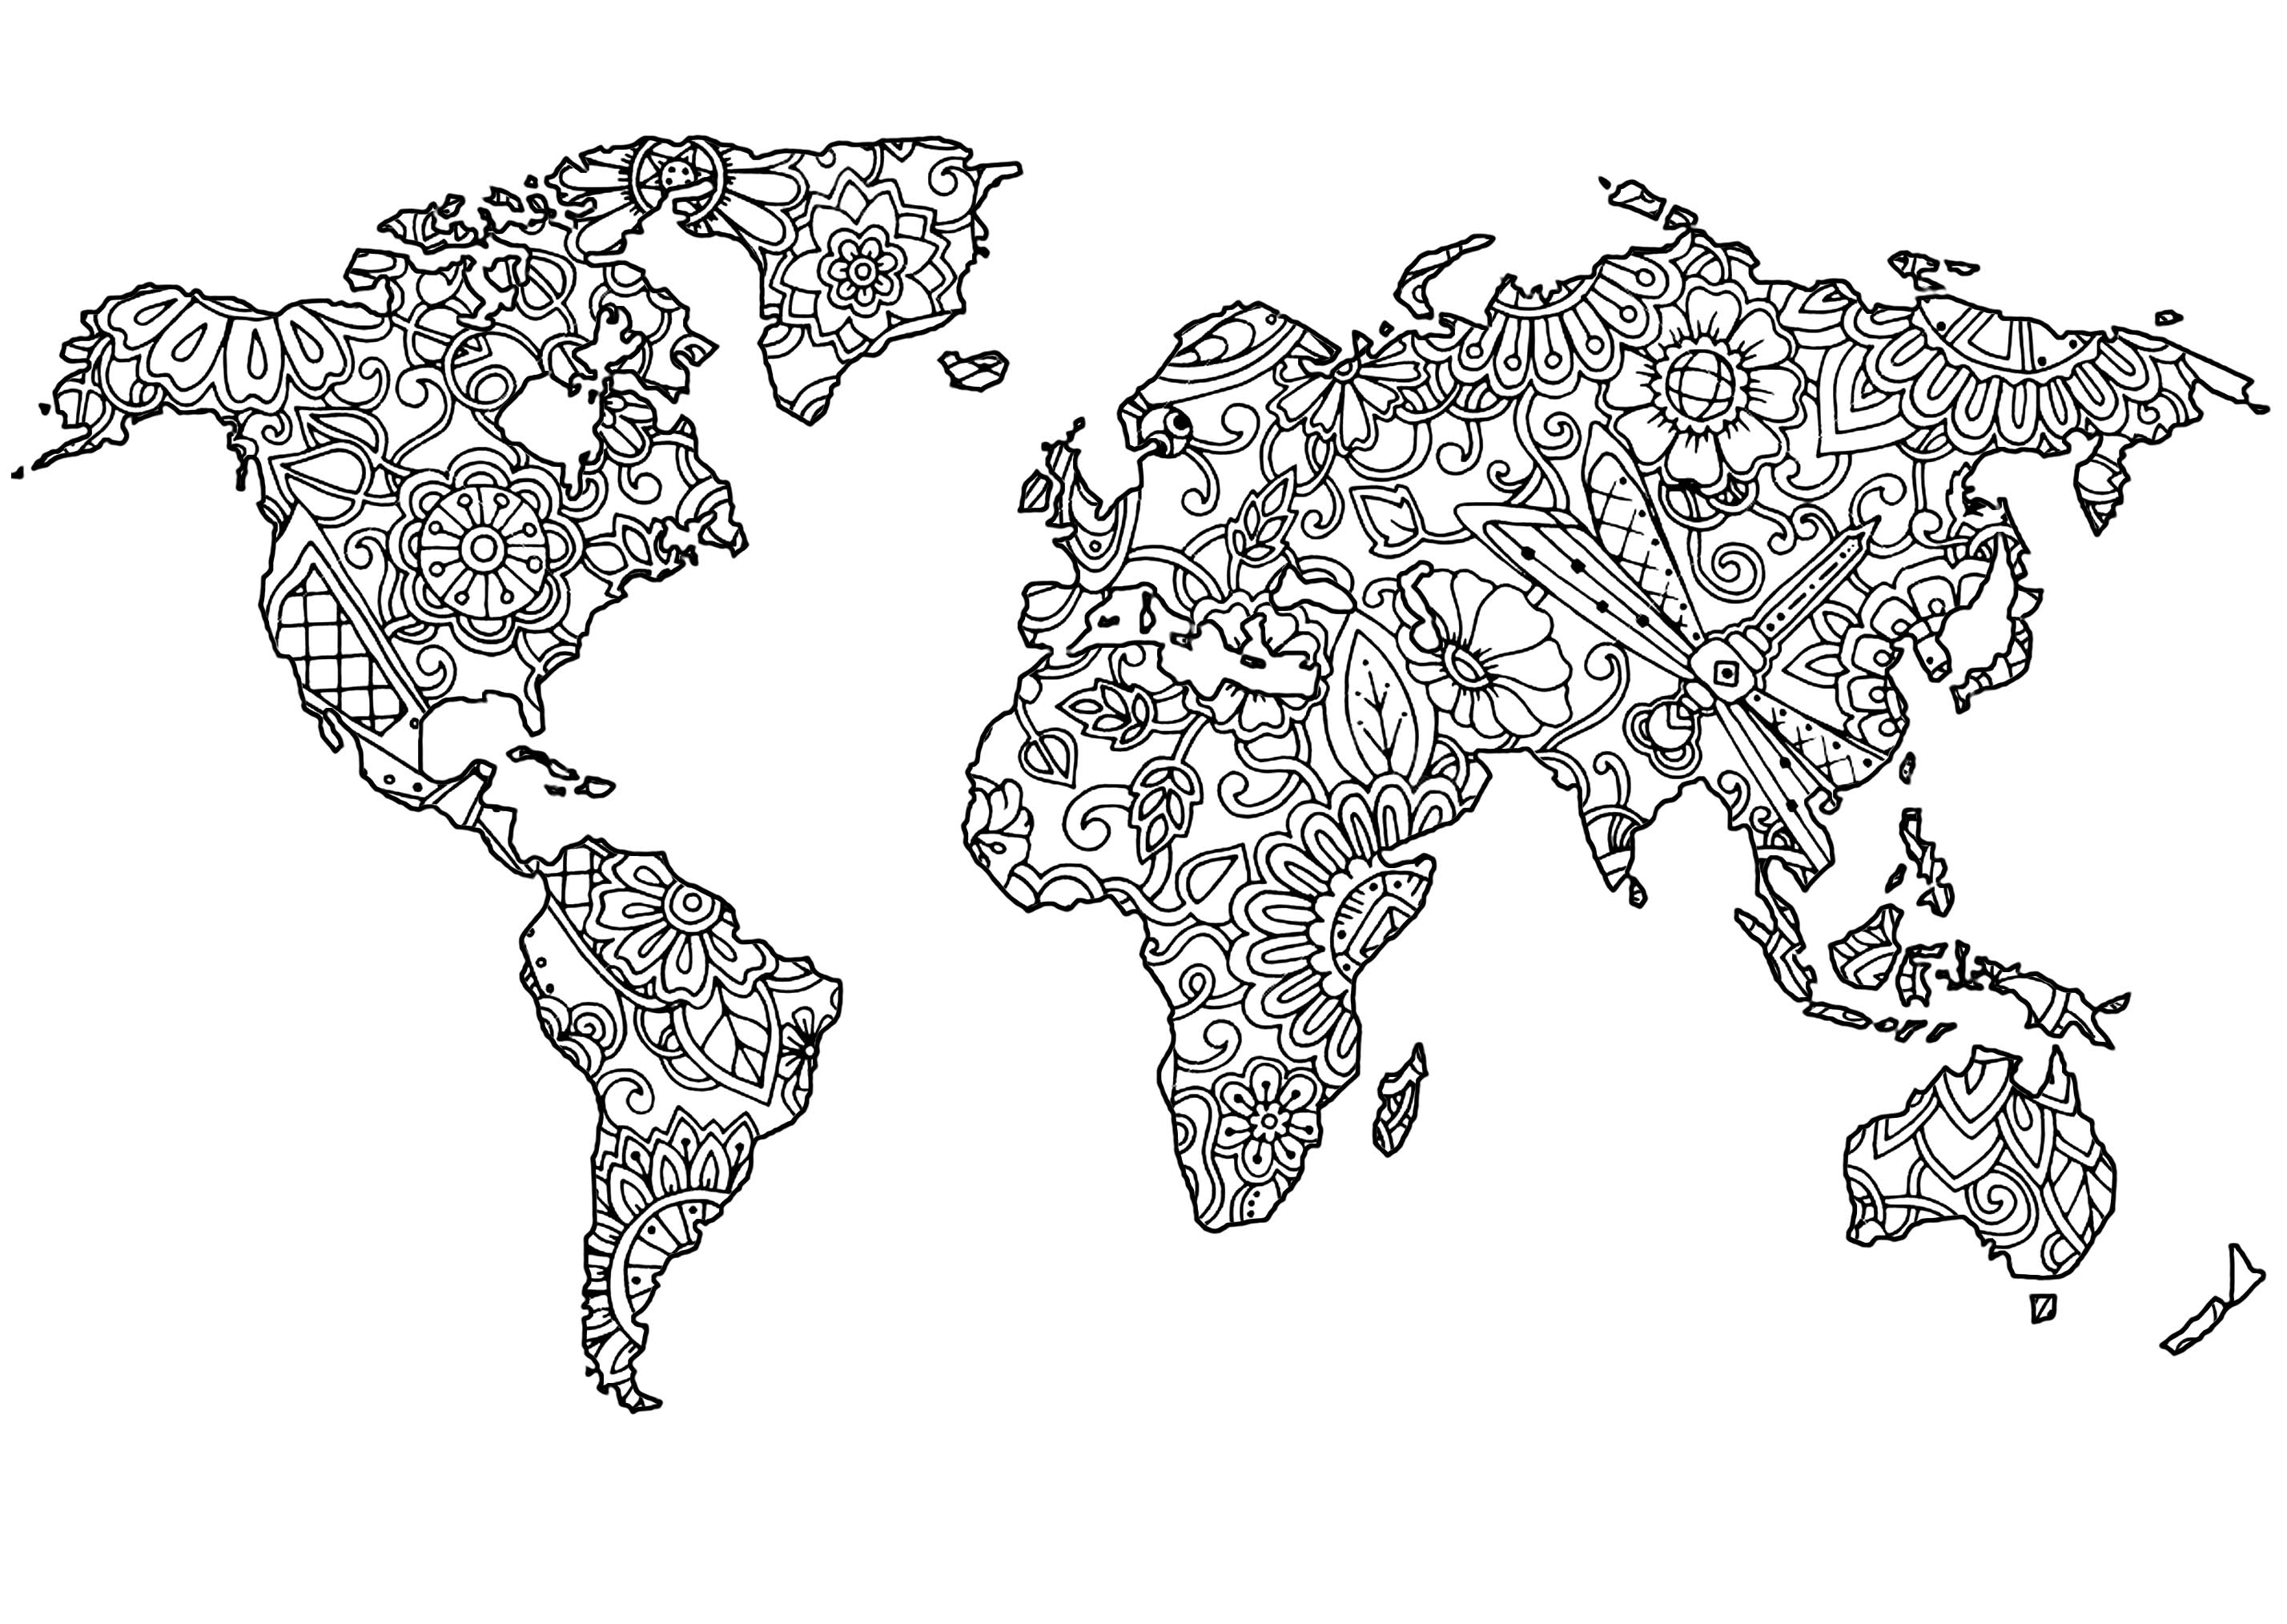 Der Planet Erde und die Blumenmuster auf seinen Kontinenten, Künstler : Art'Isabelle